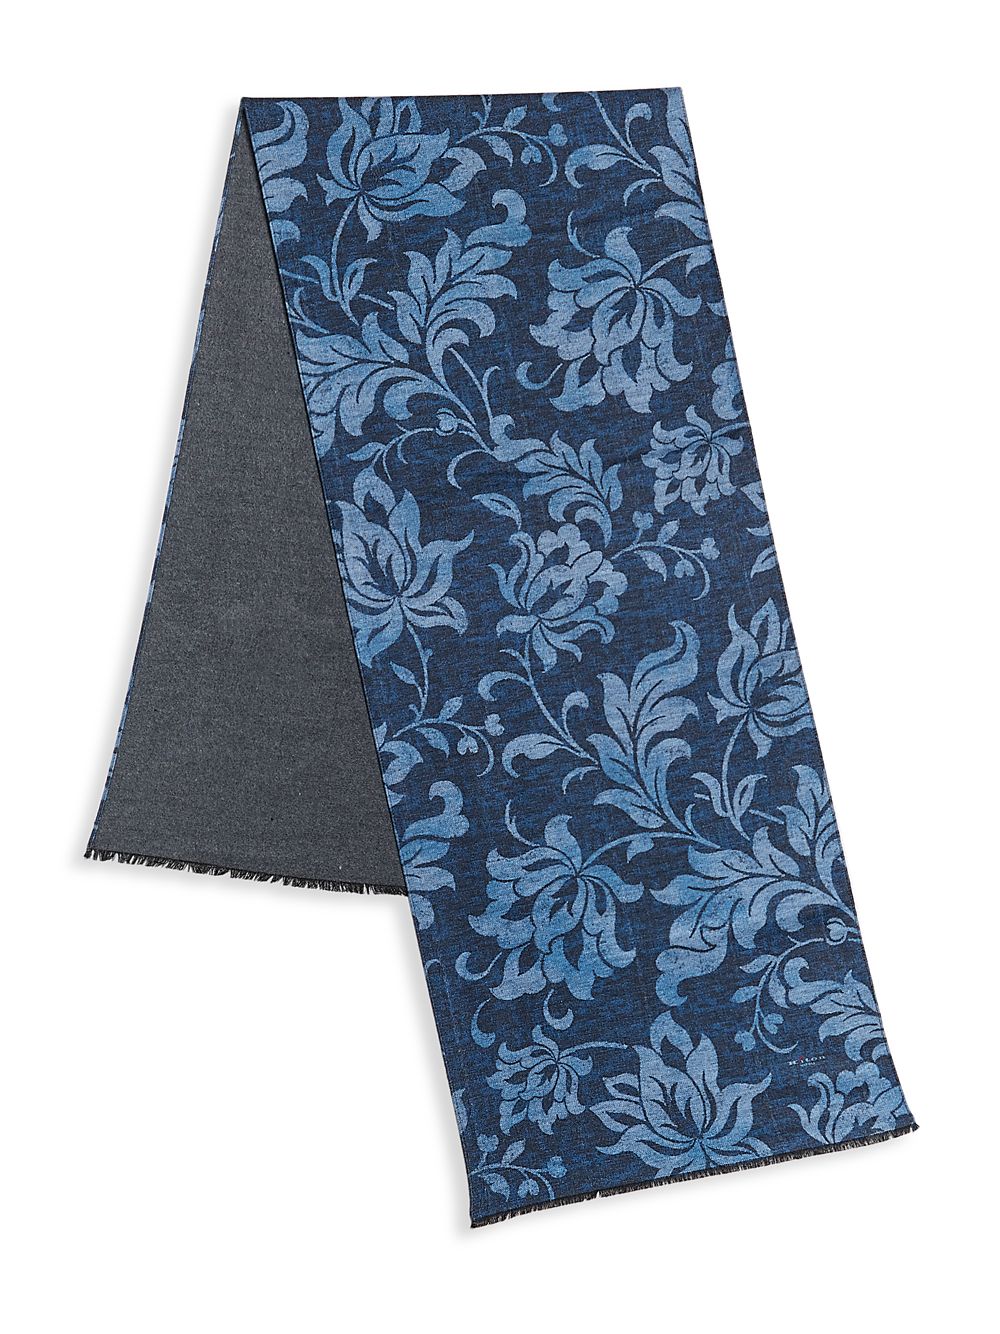 Шелковый шарф с принтом листьев Kiton, синий